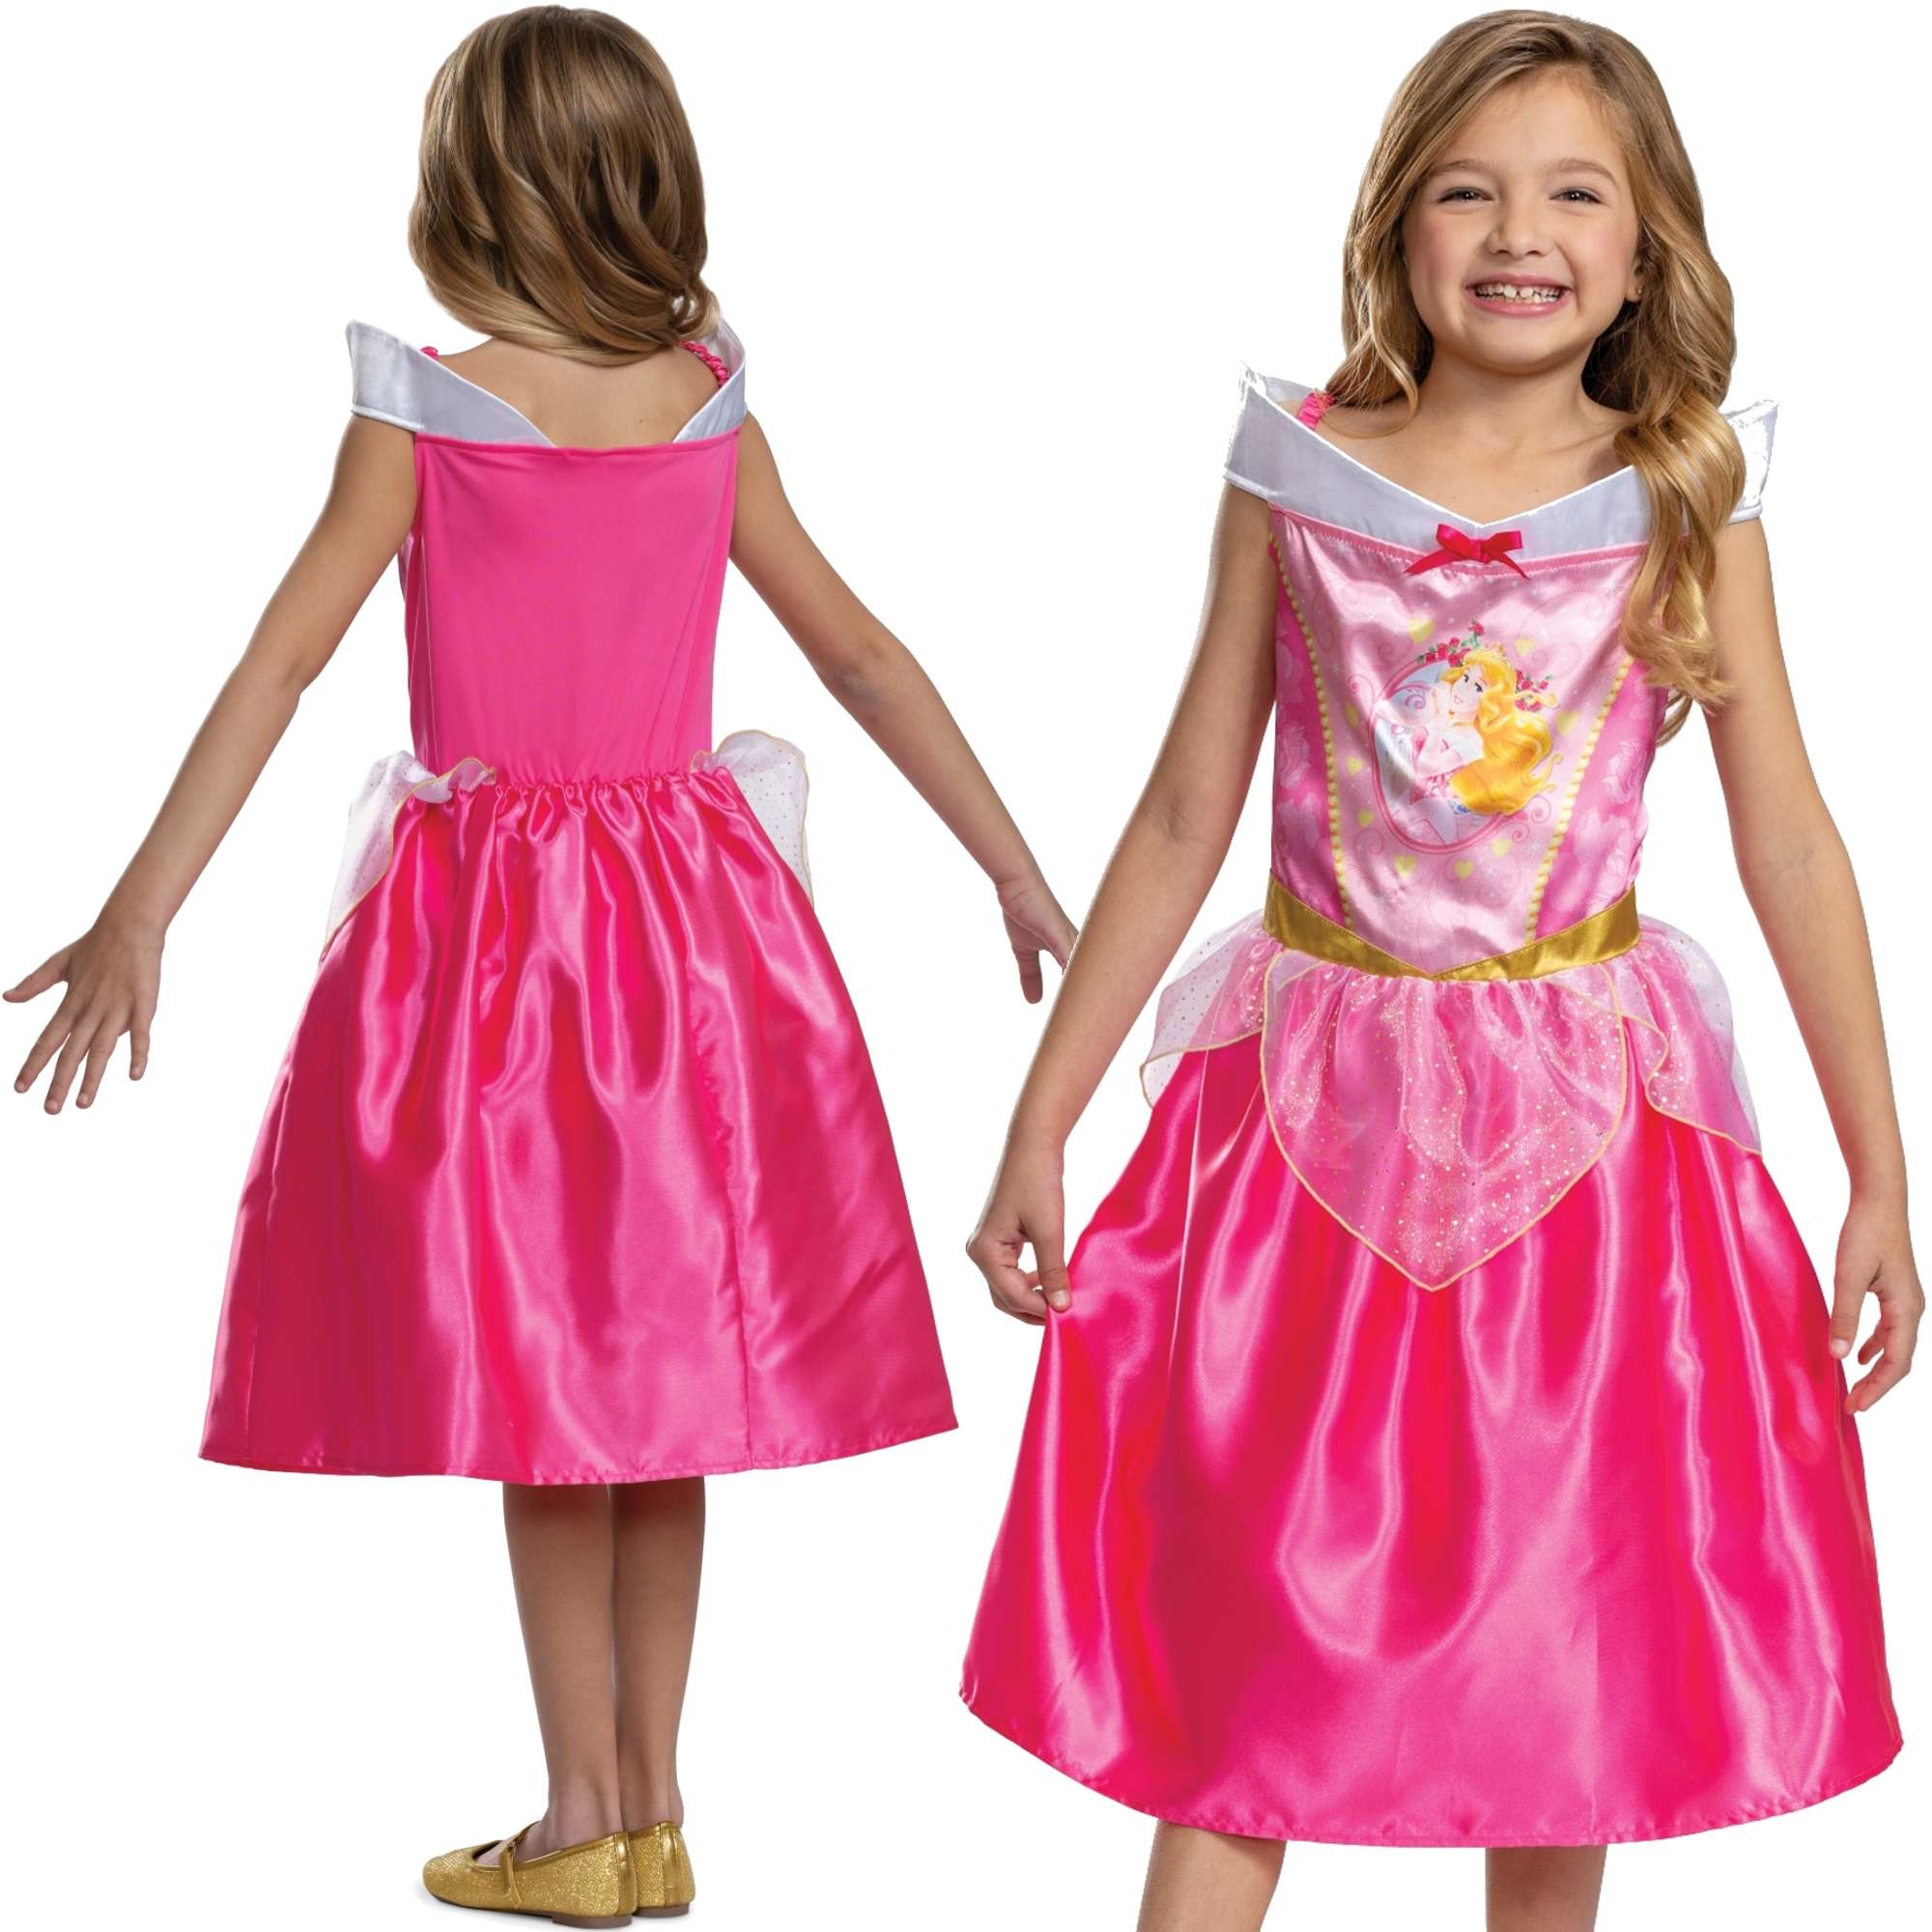 Strj karnawaowy Disney dla dziewczynki pica krlewna Aurora kostium przebranie 98-110 cm